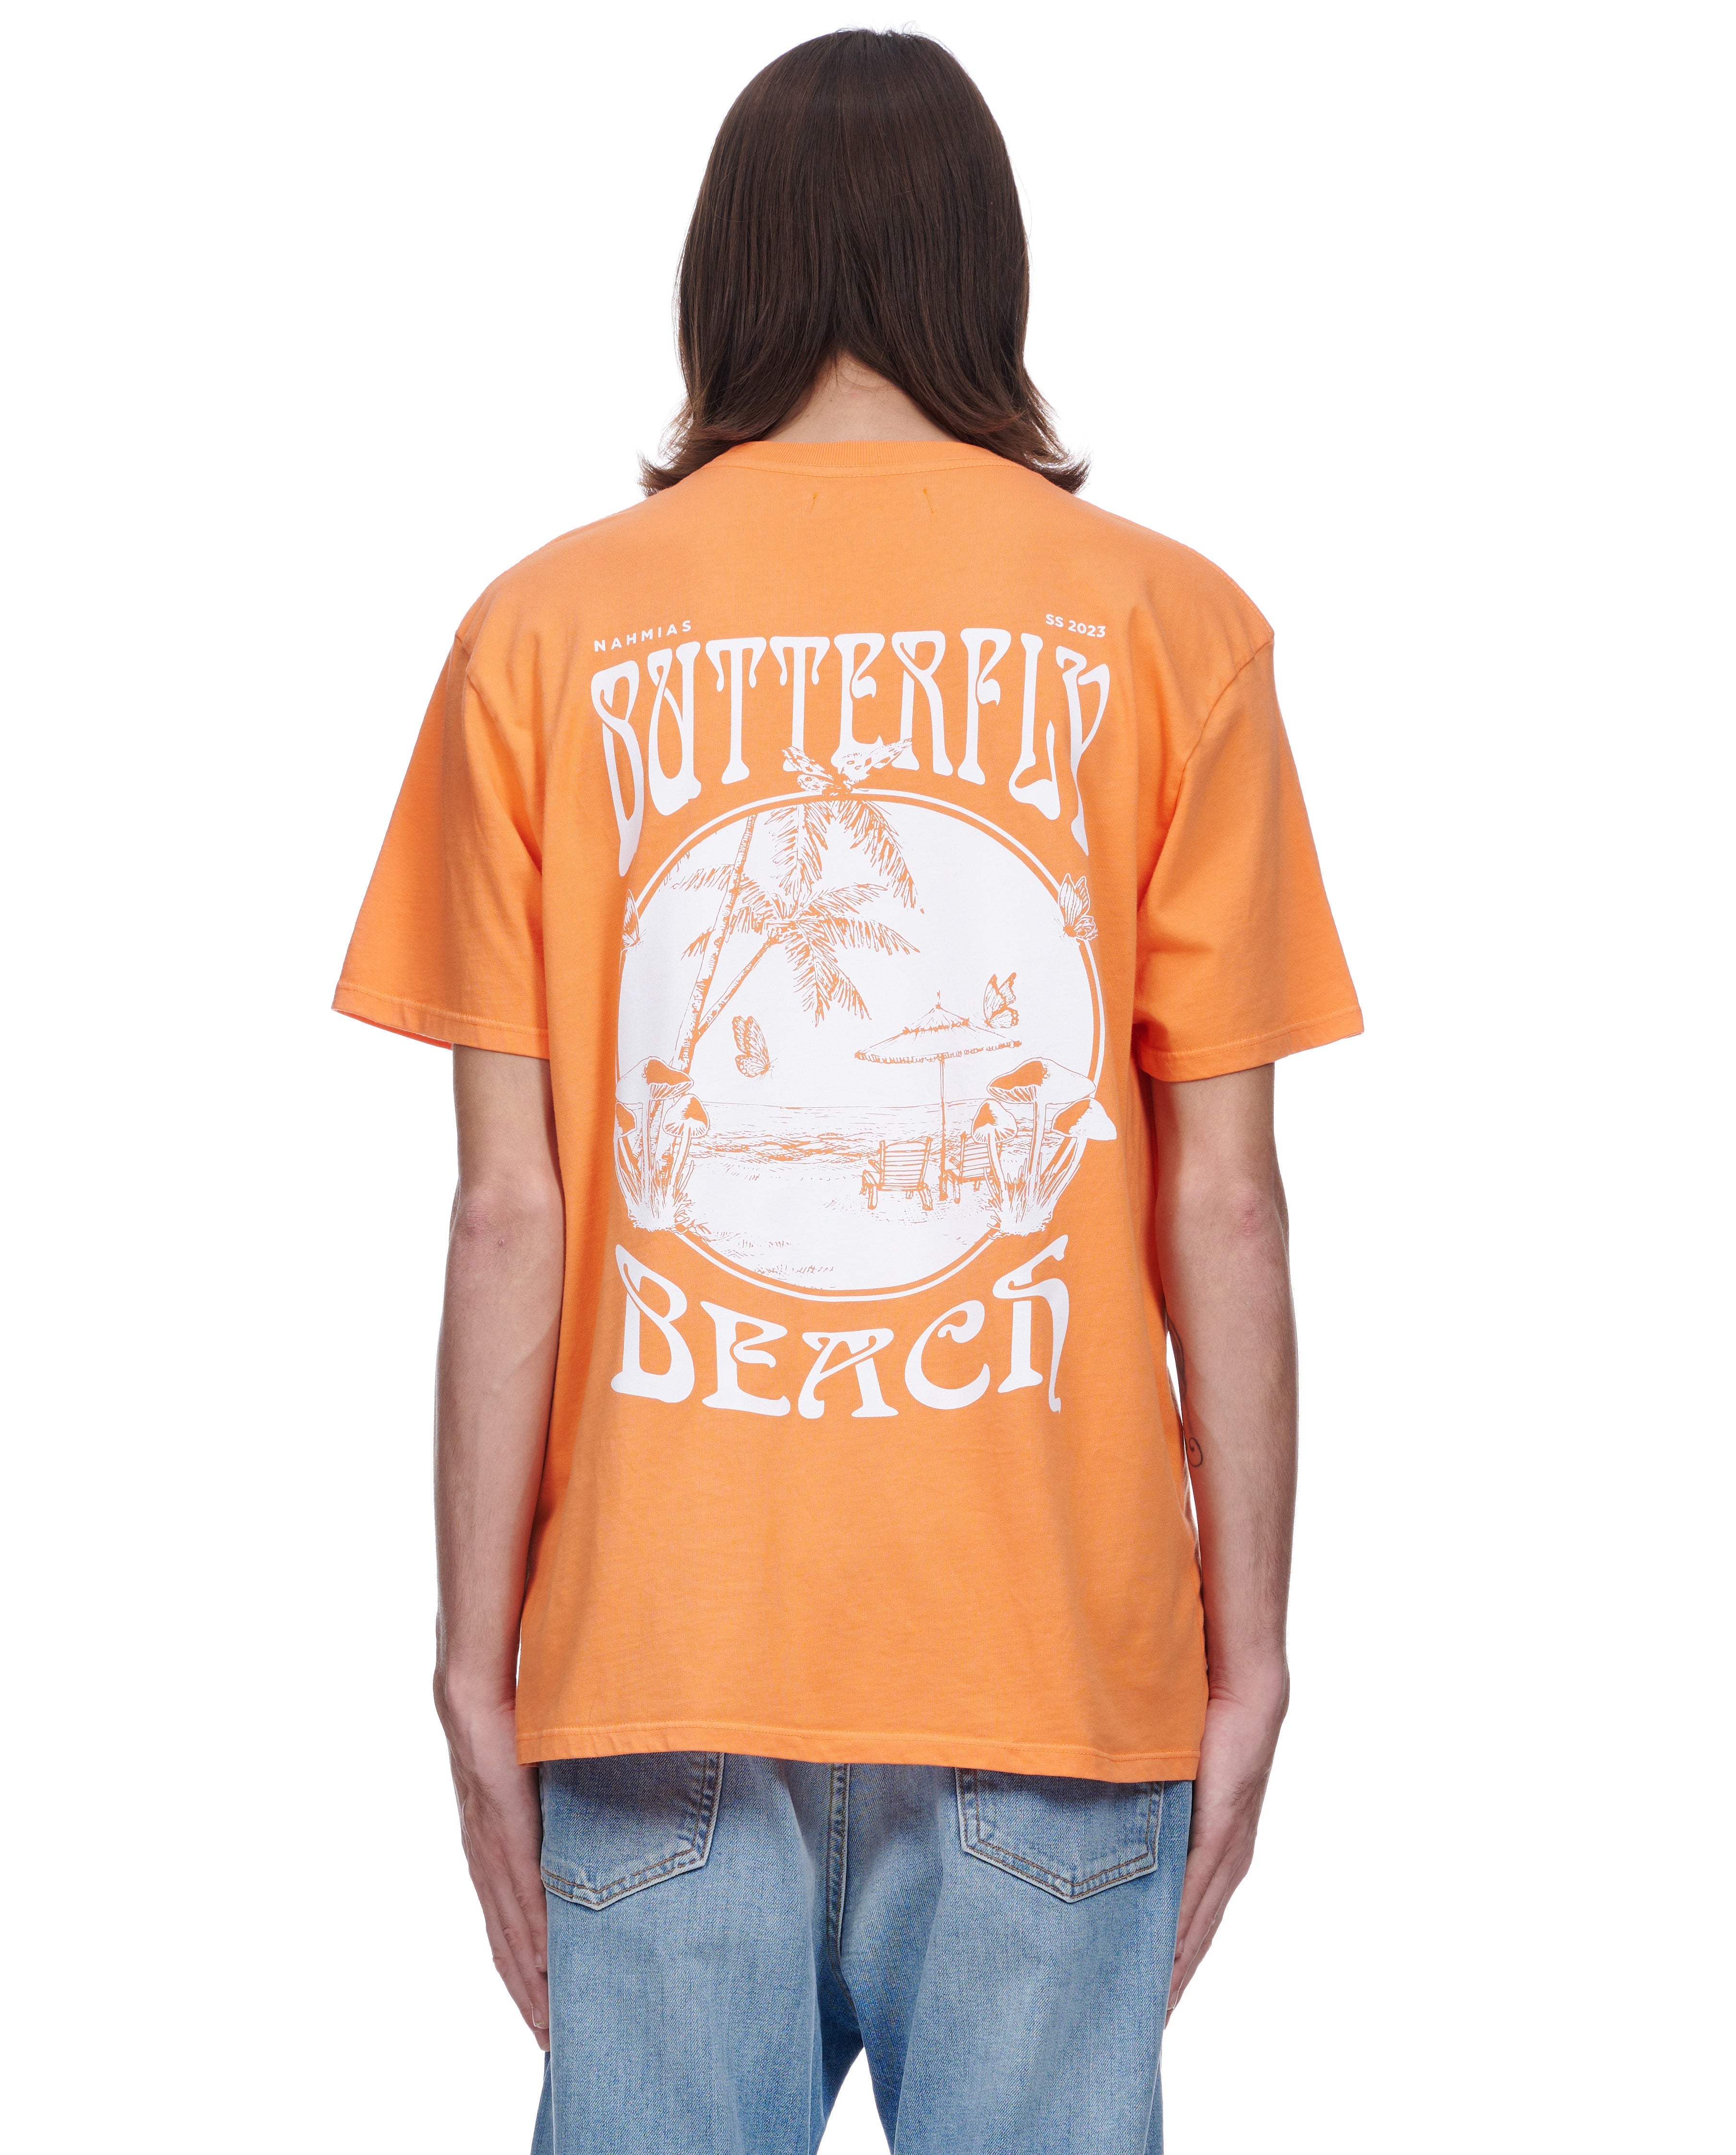 Butterfly Beach T Shirt